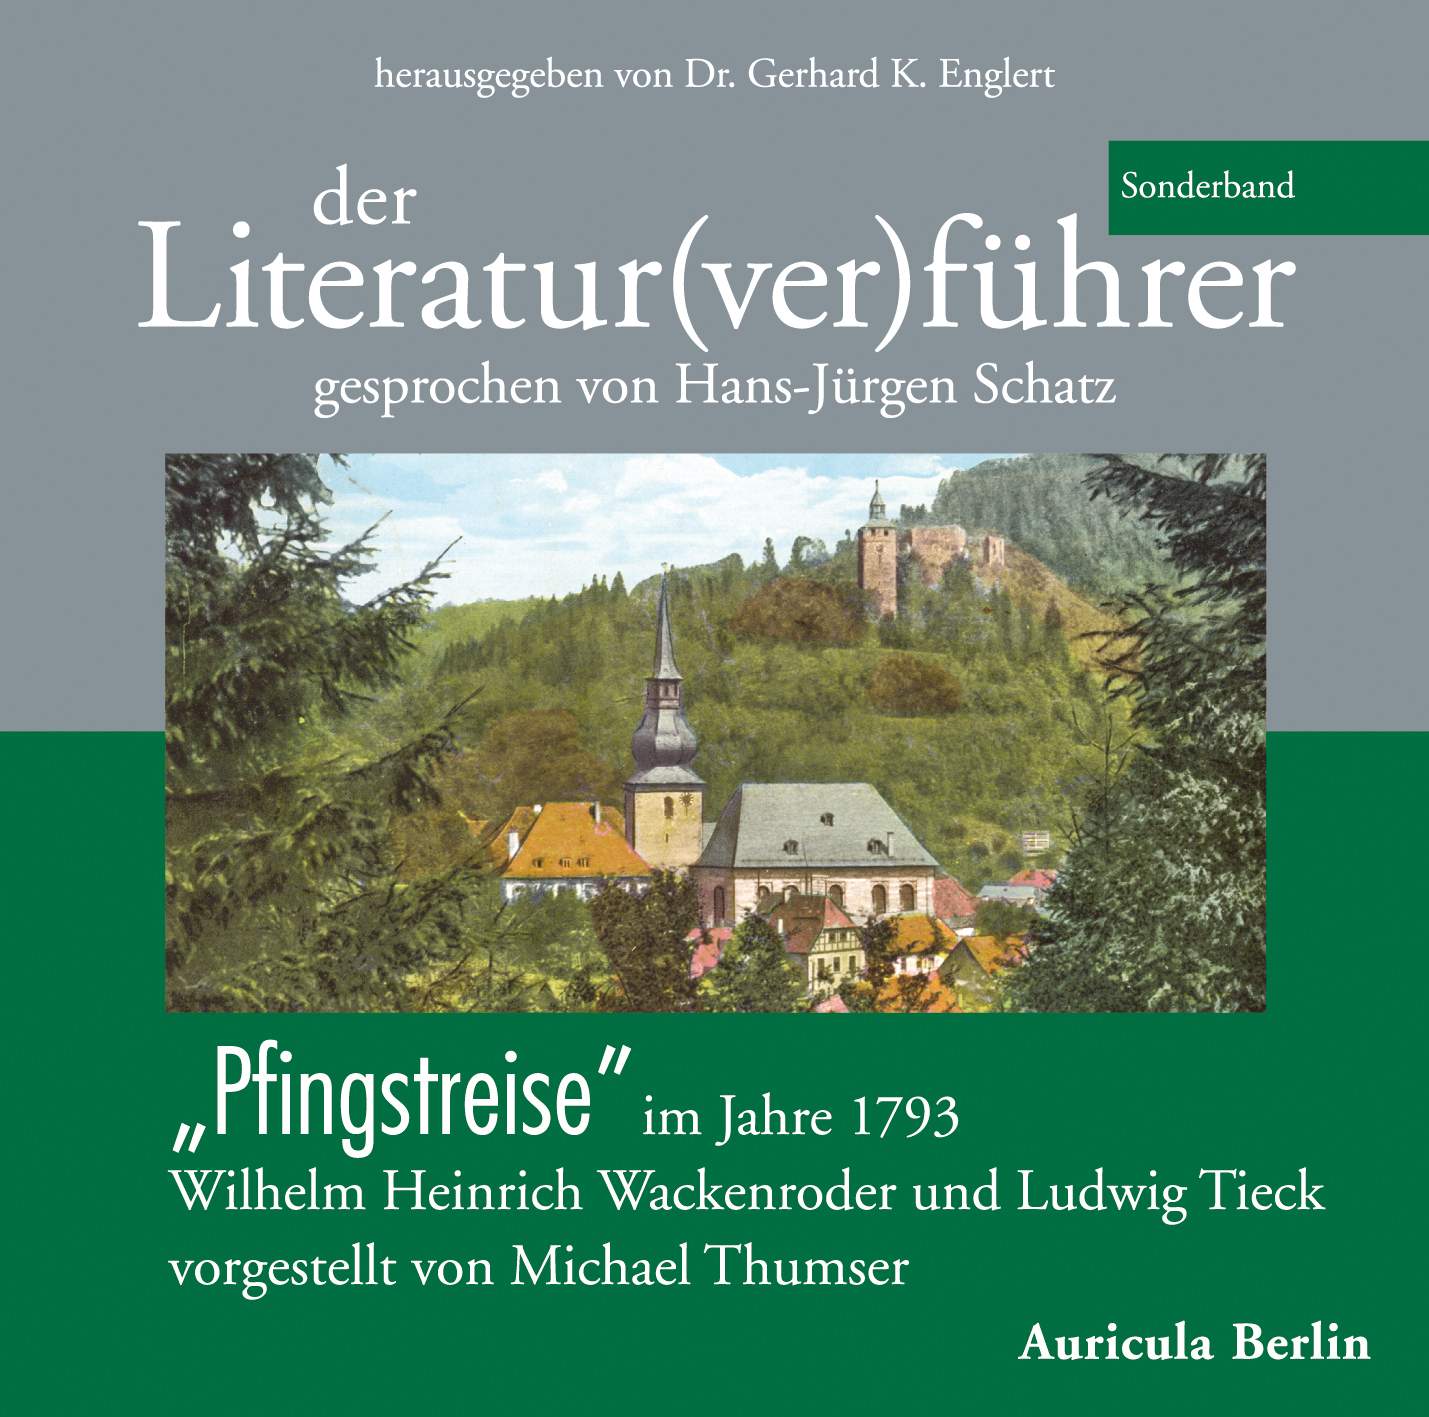 "Der Literatur(ver)führer" Cover Sonderband 